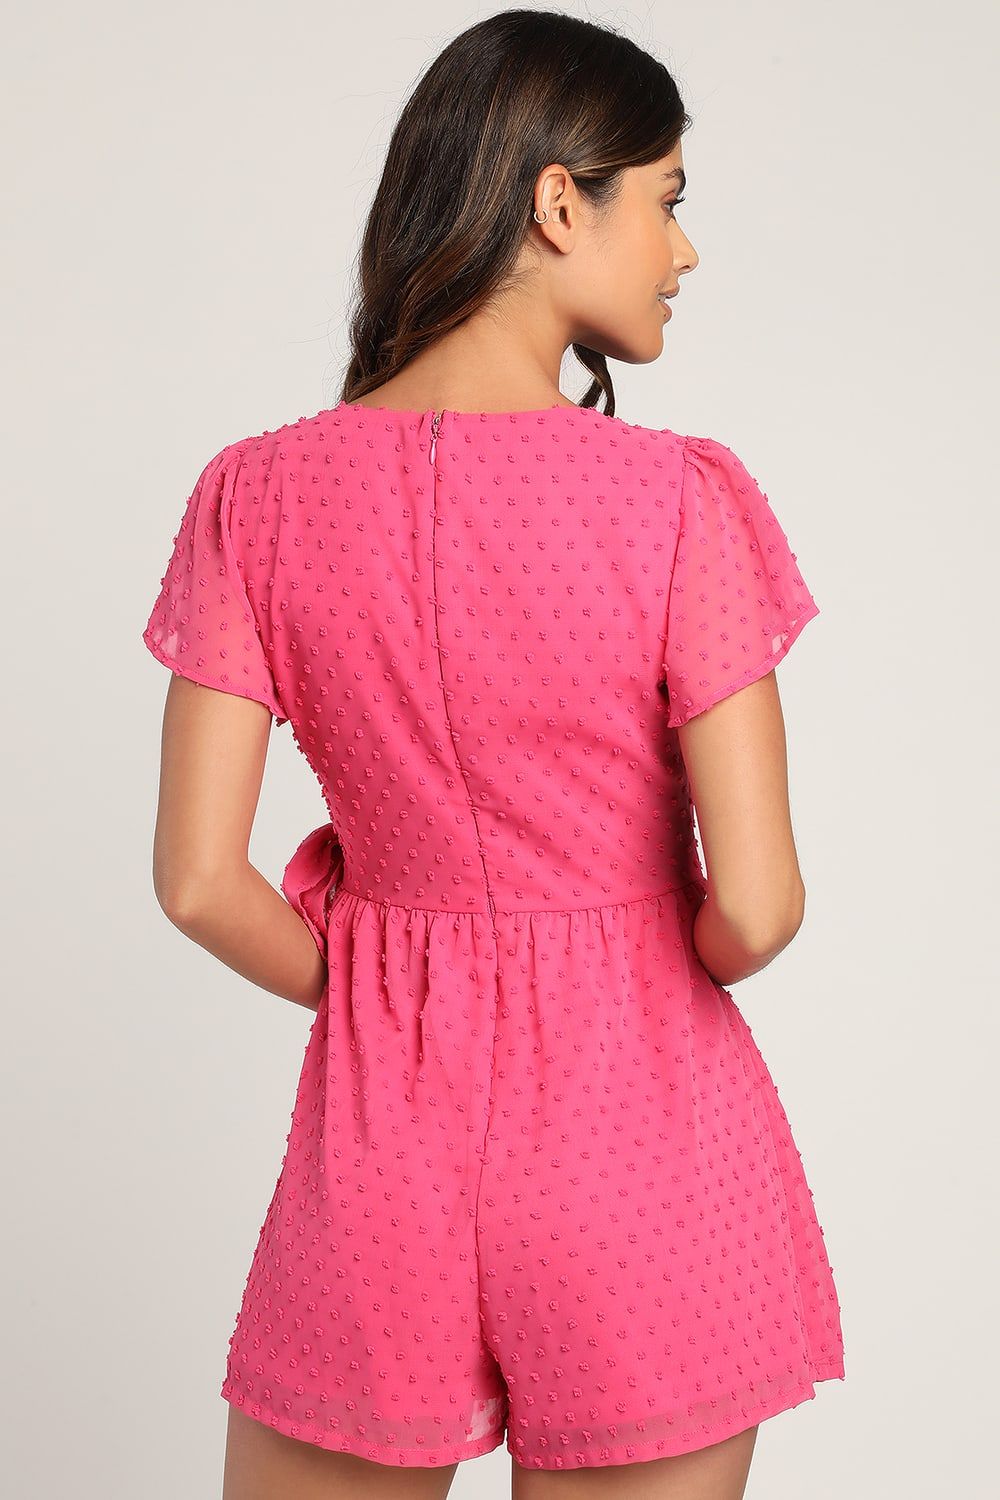 Love for Always Pink Swiss Dot Flutter Sleeve Side-Tie Romper | Lulus